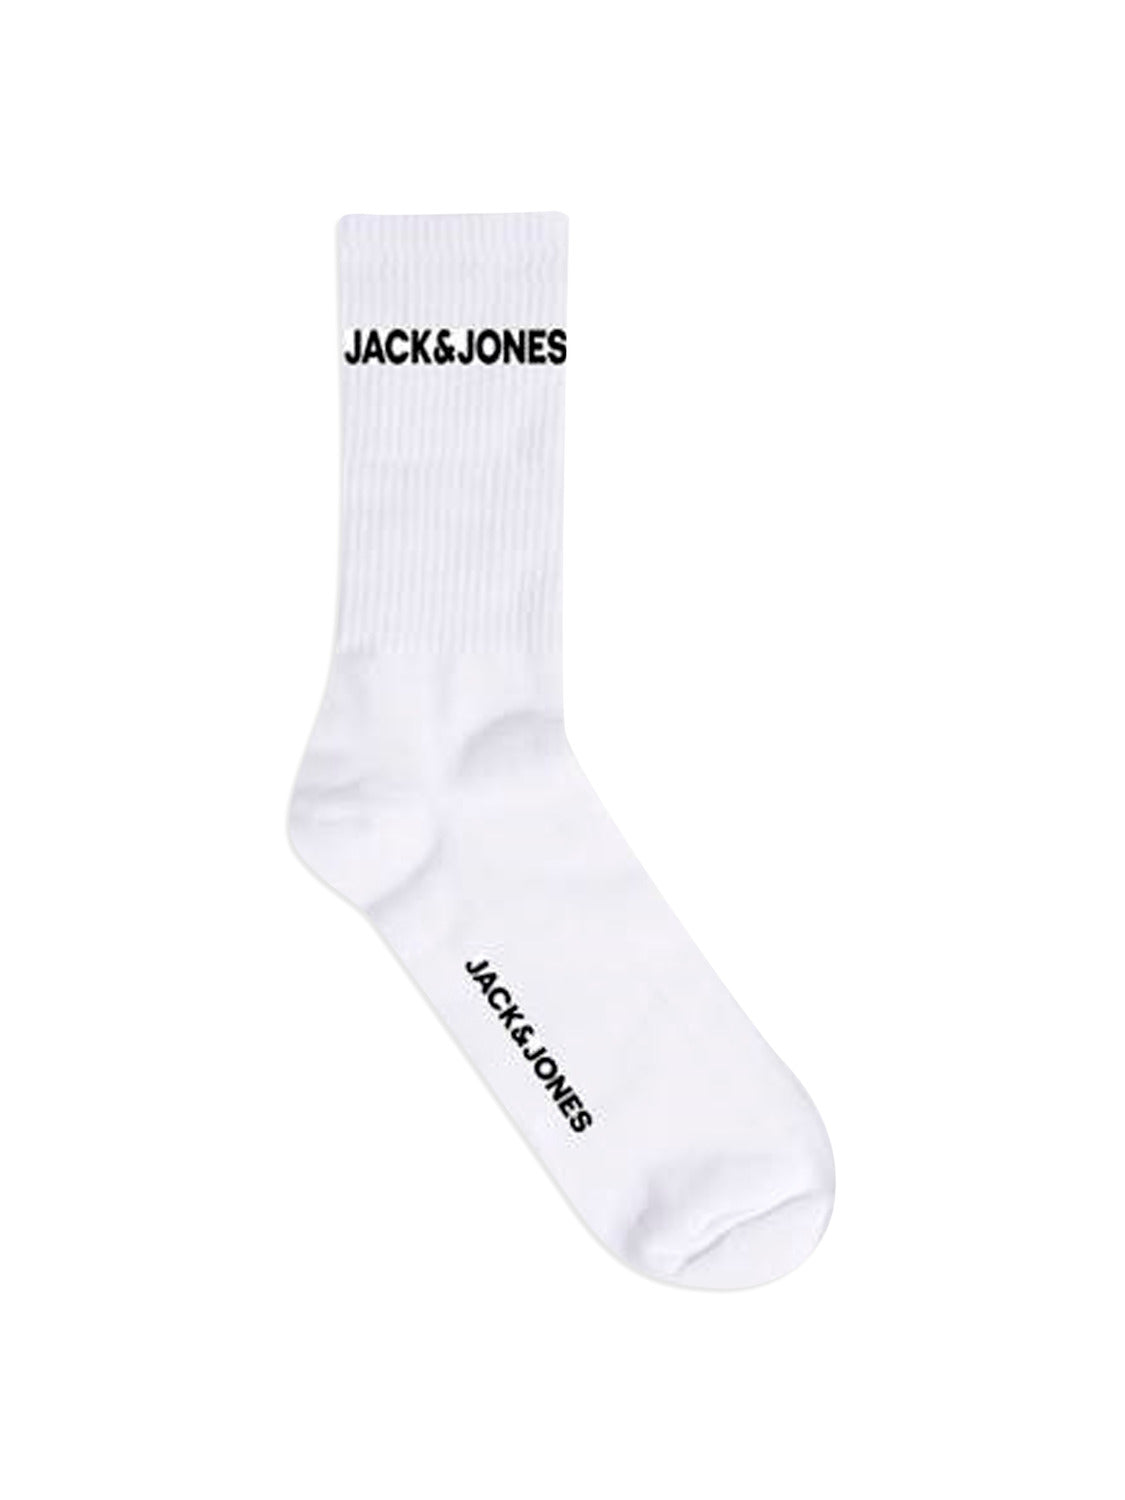 JACBASIC 5 Pack Socks - White